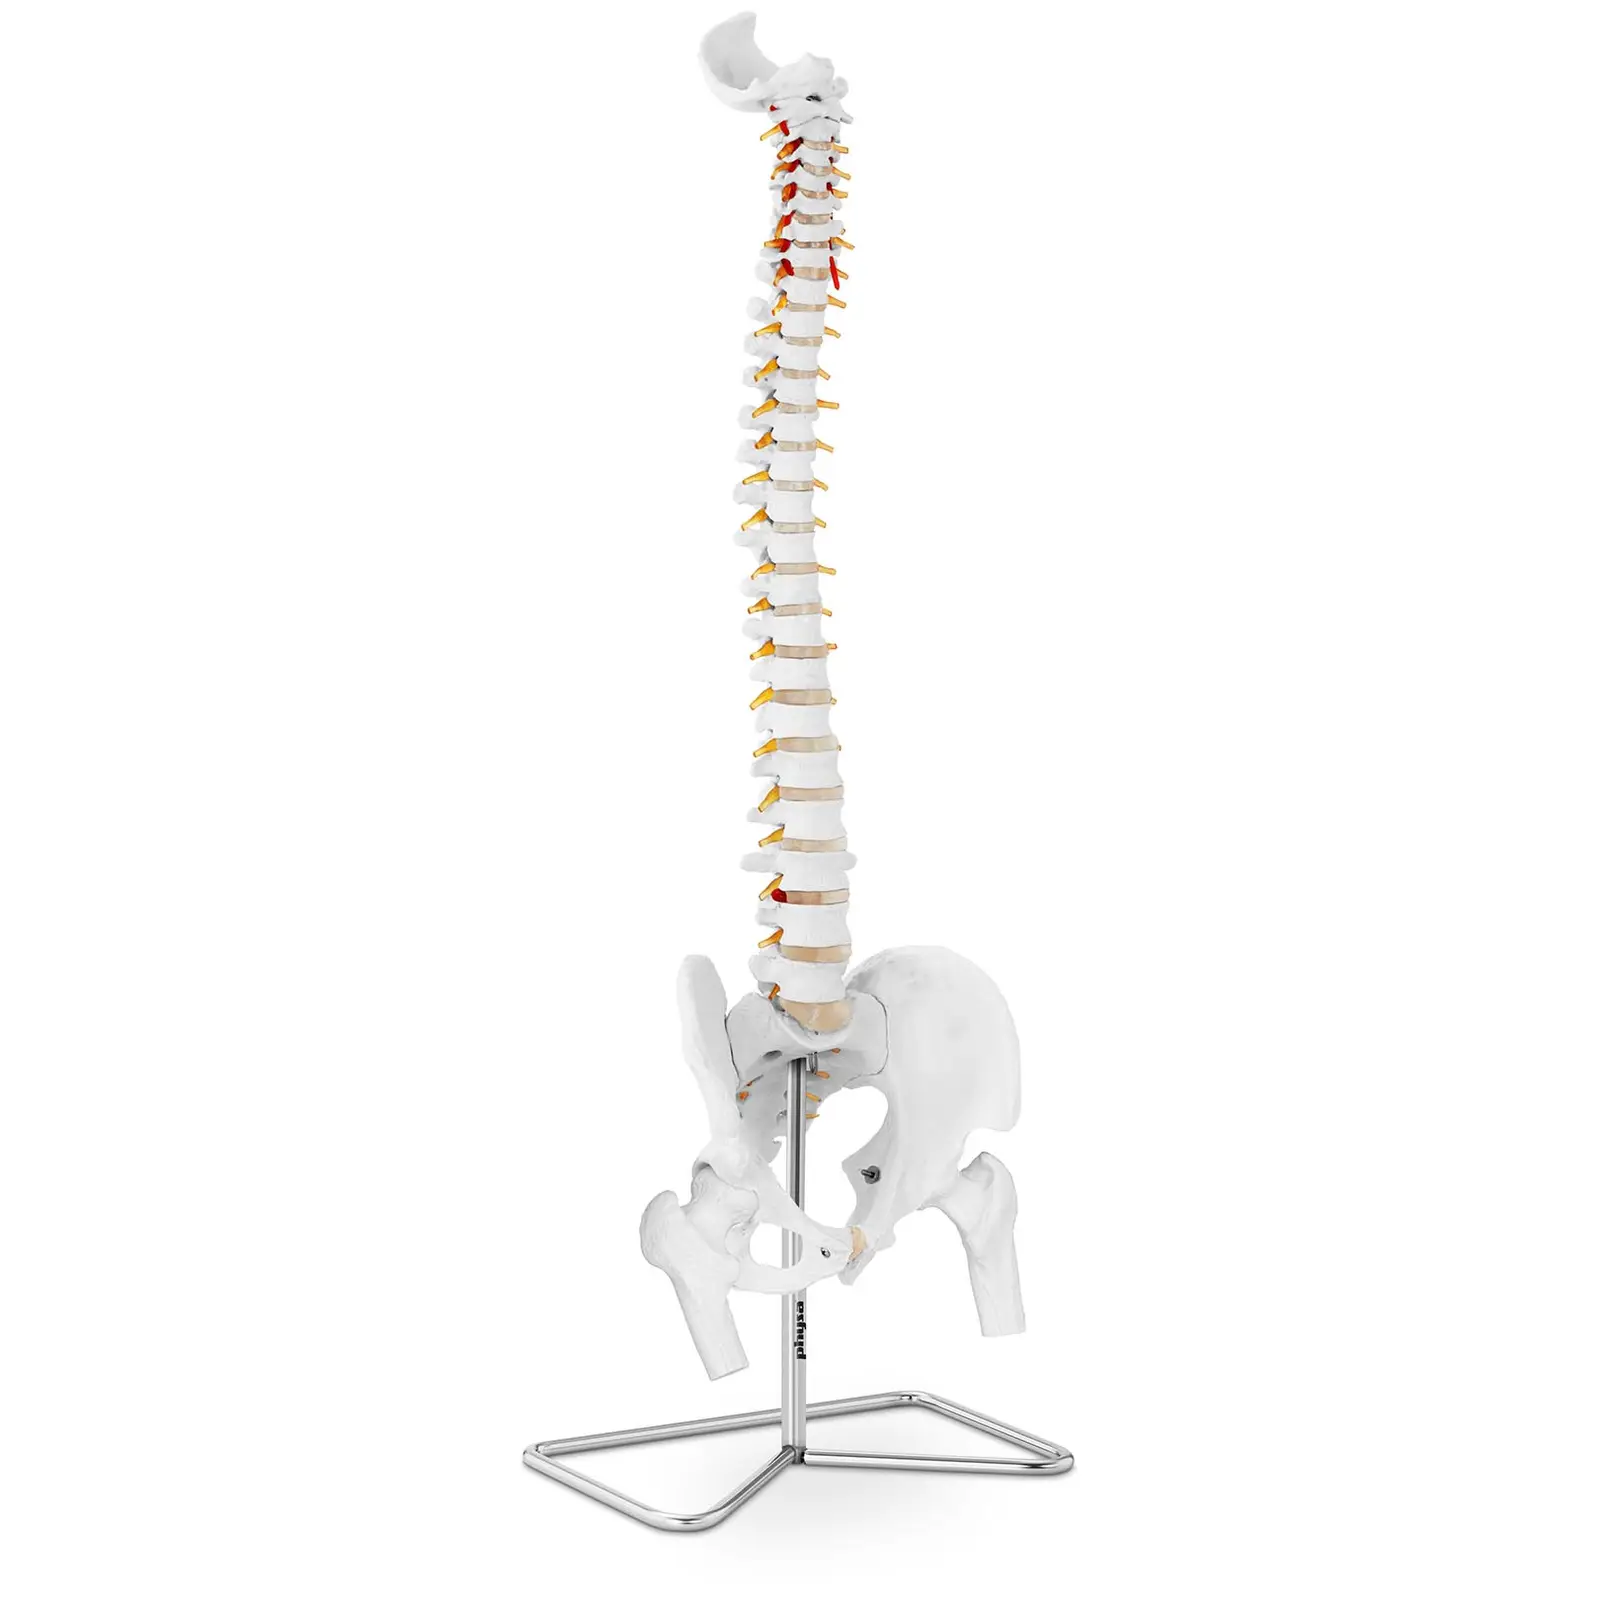 Maquette anatomique pelvis humain avec colonne vertébrale